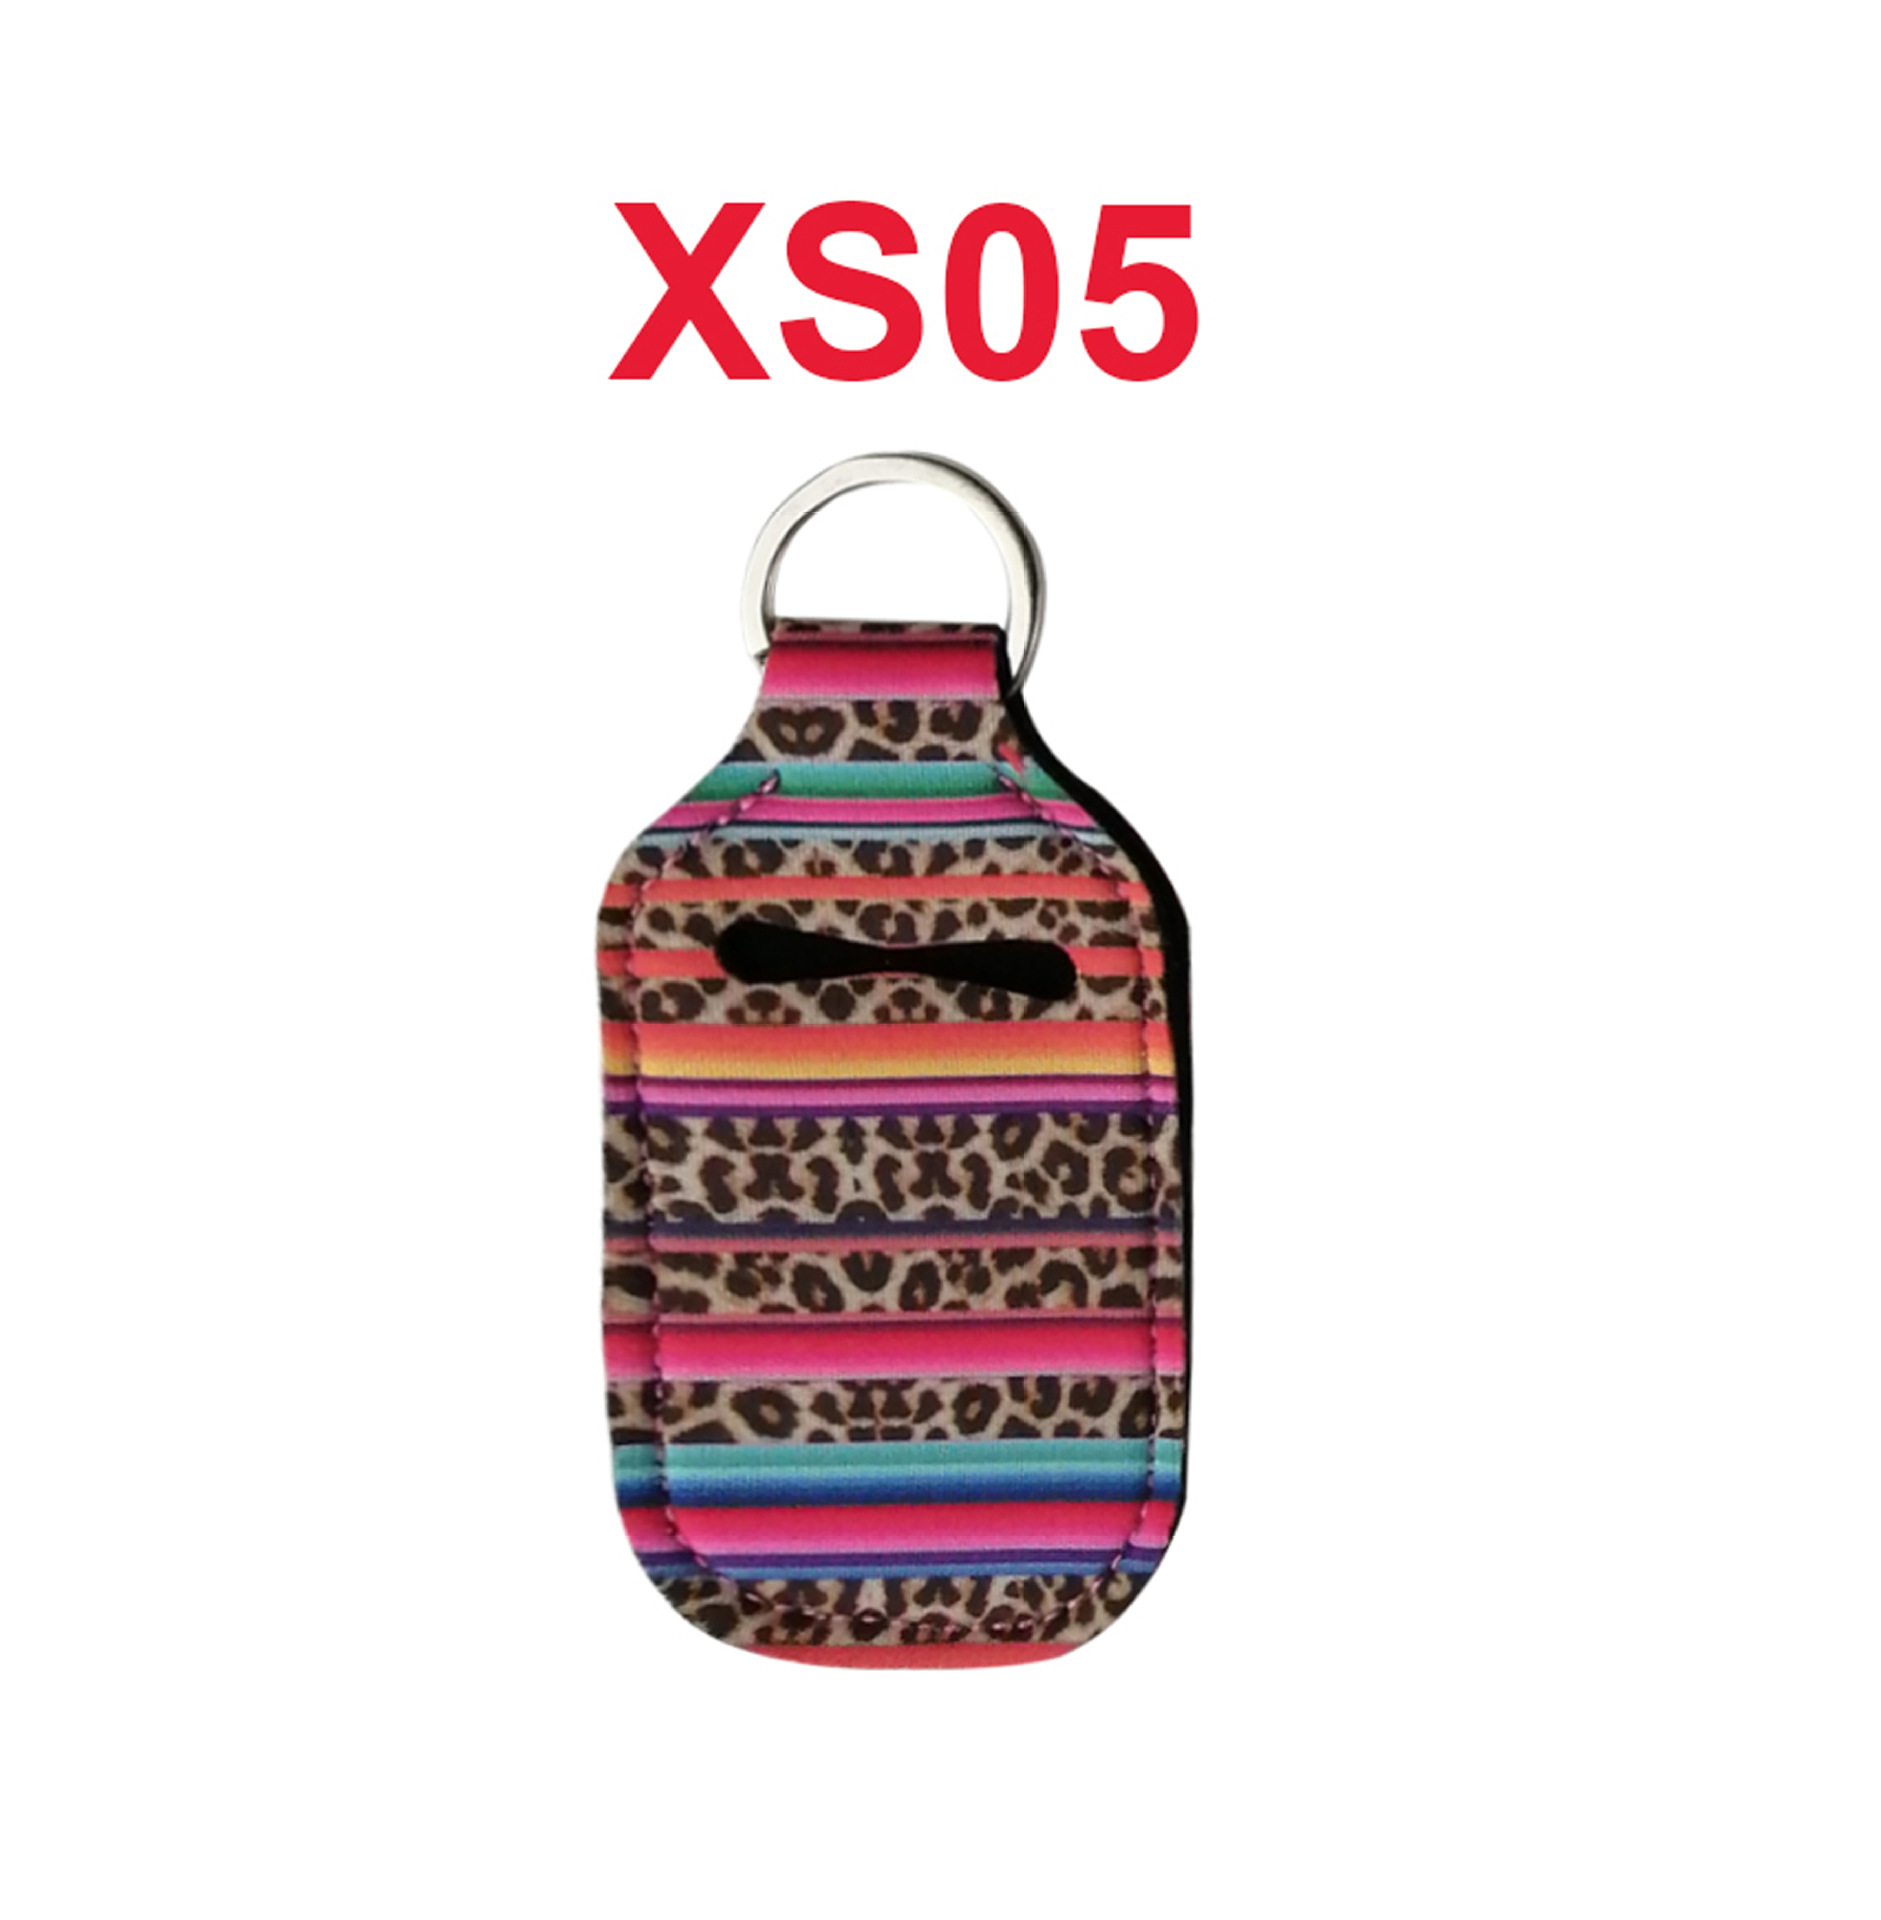 XS05